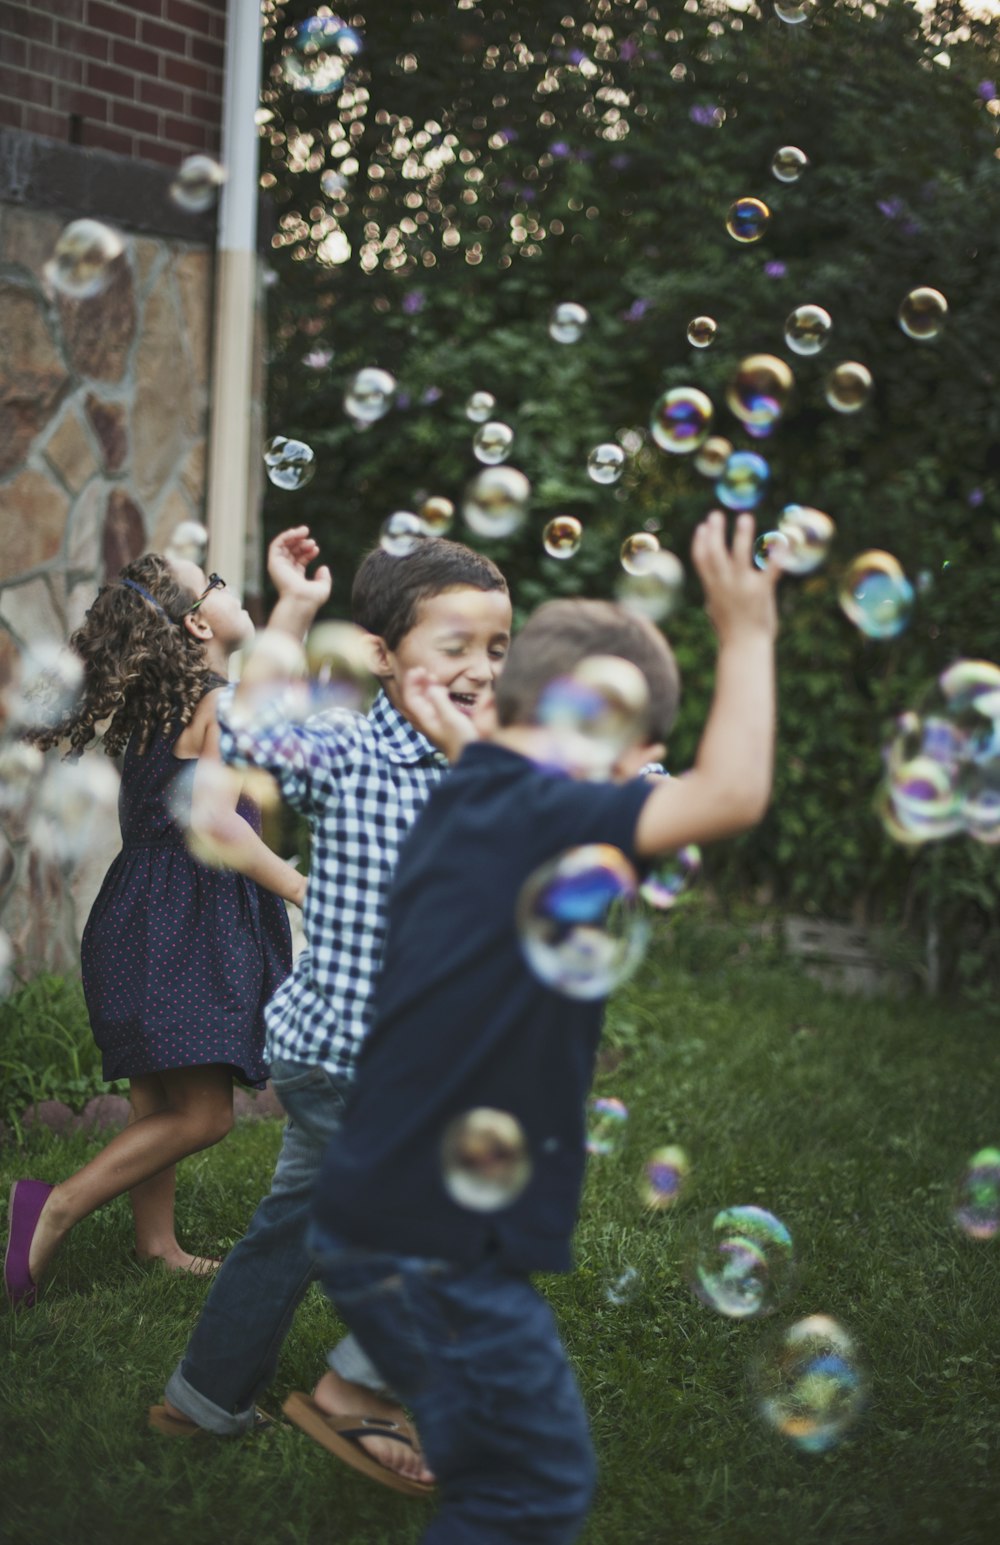 Chico con camisa de lunares azul y blanco jugando a las burbujas